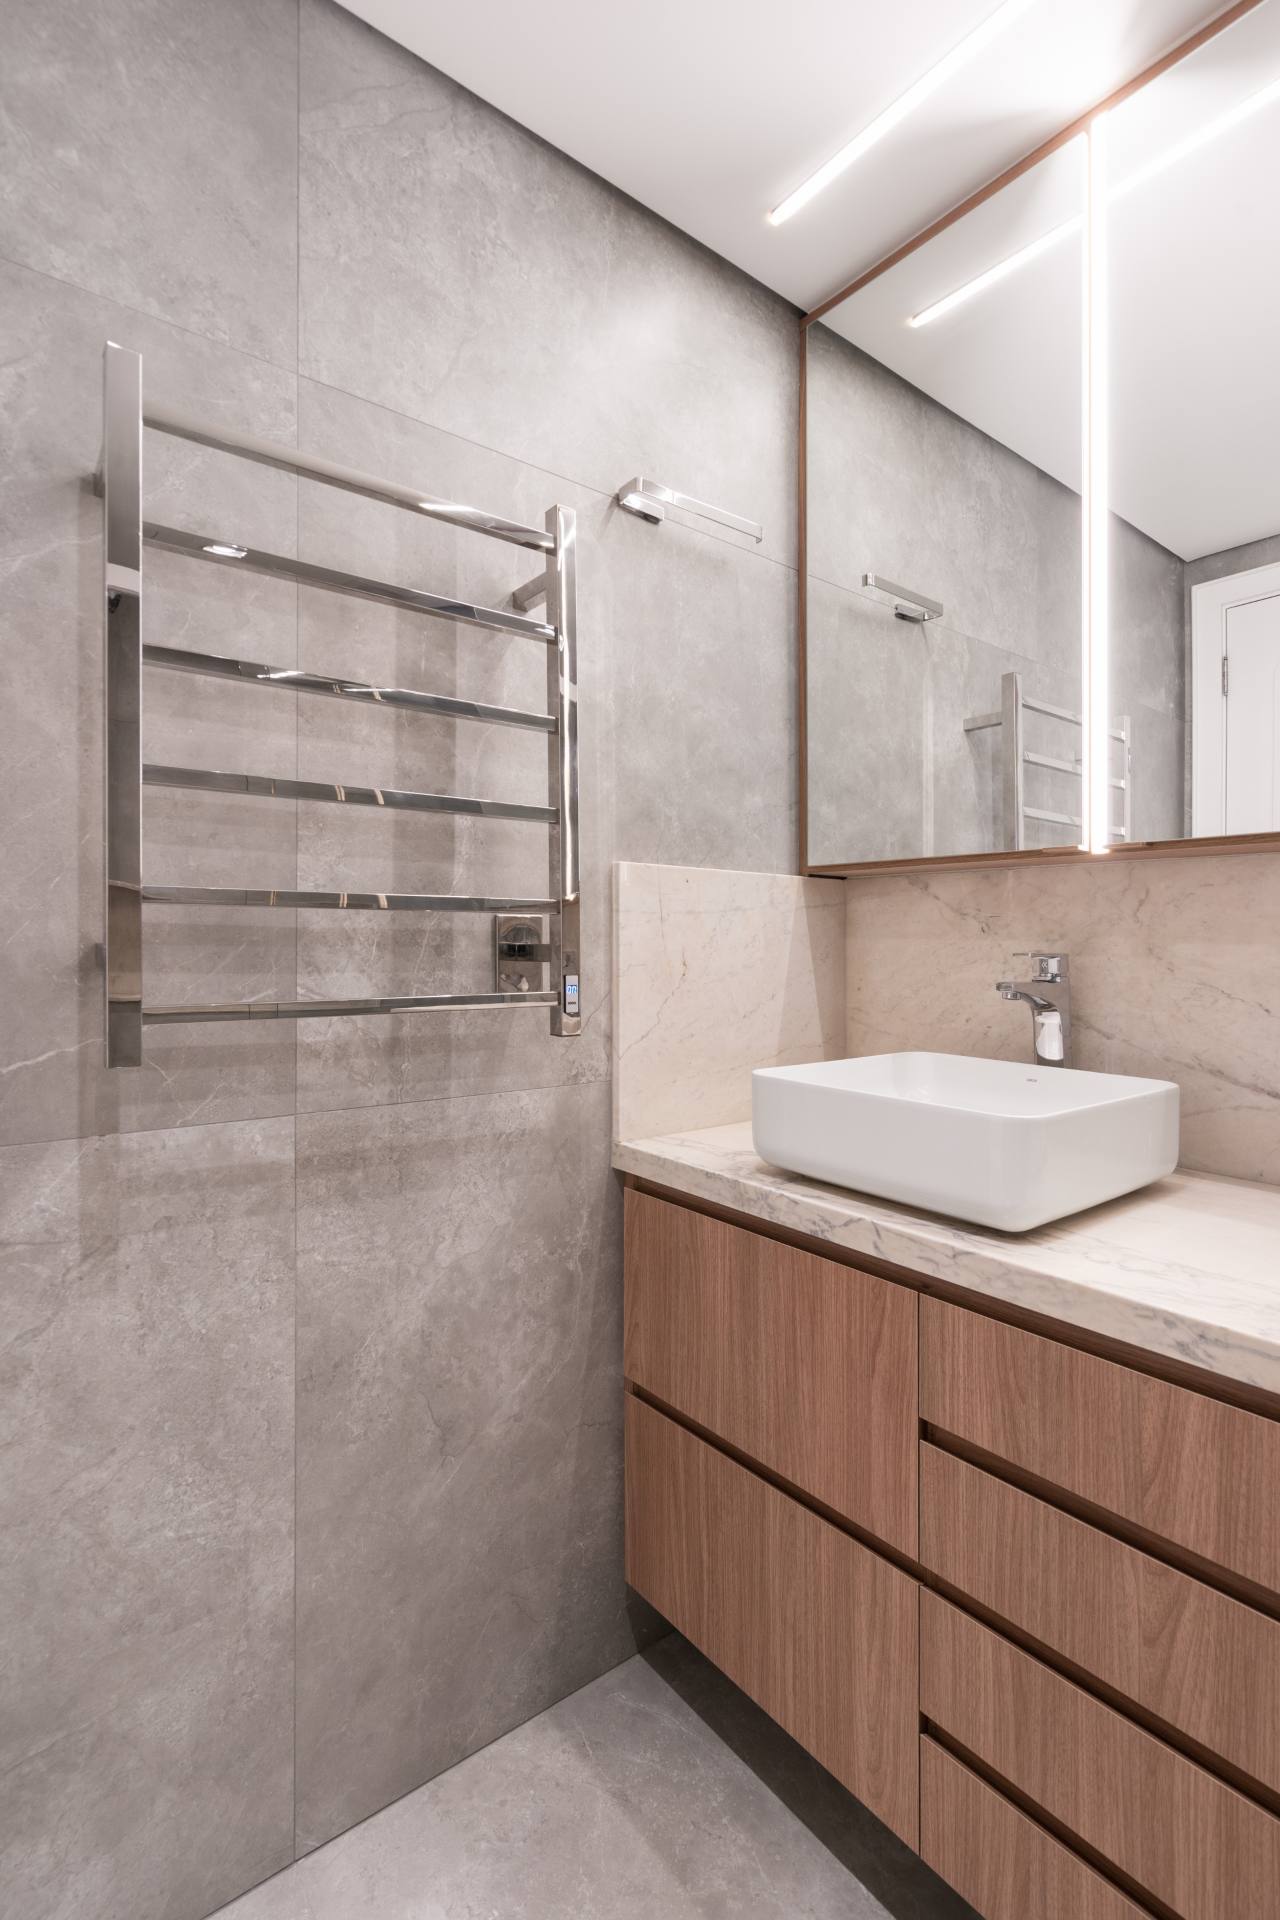 Banheiro minimalista com detalhes em cinza e madeira, toalheiro térmico prata